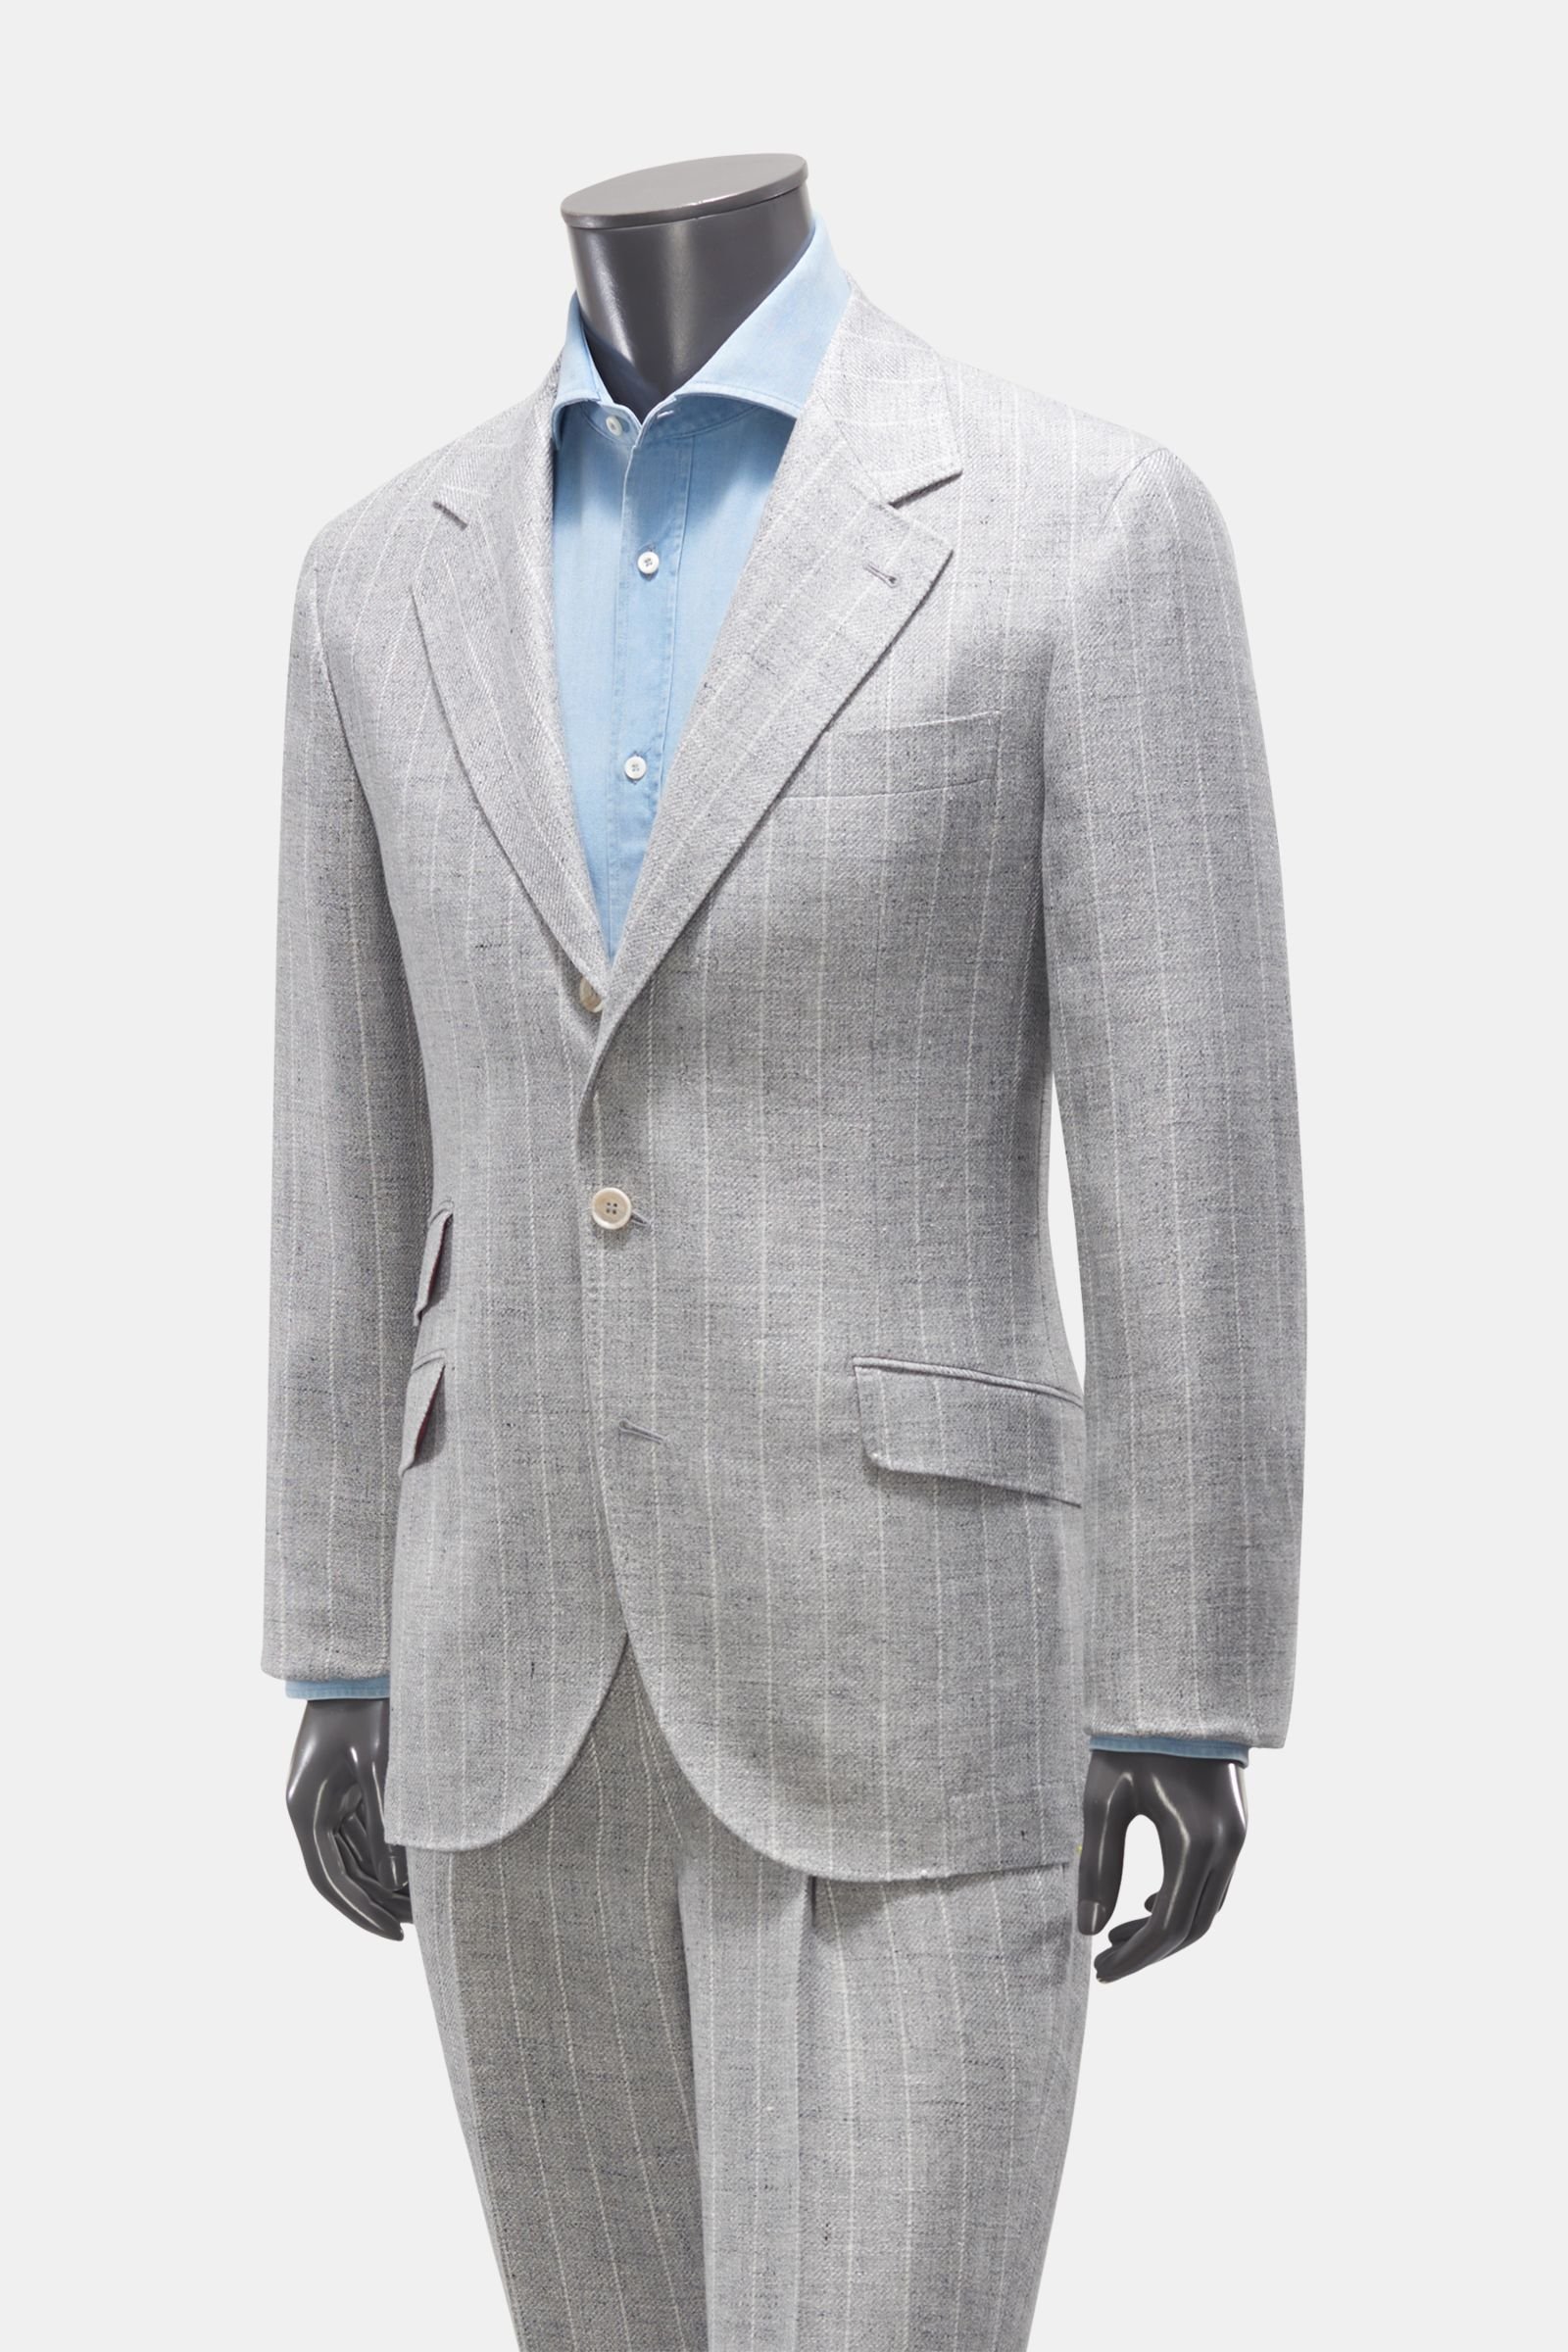 BRUNELLO CUCINELLI suit light grey striped | BRAUN Hamburg